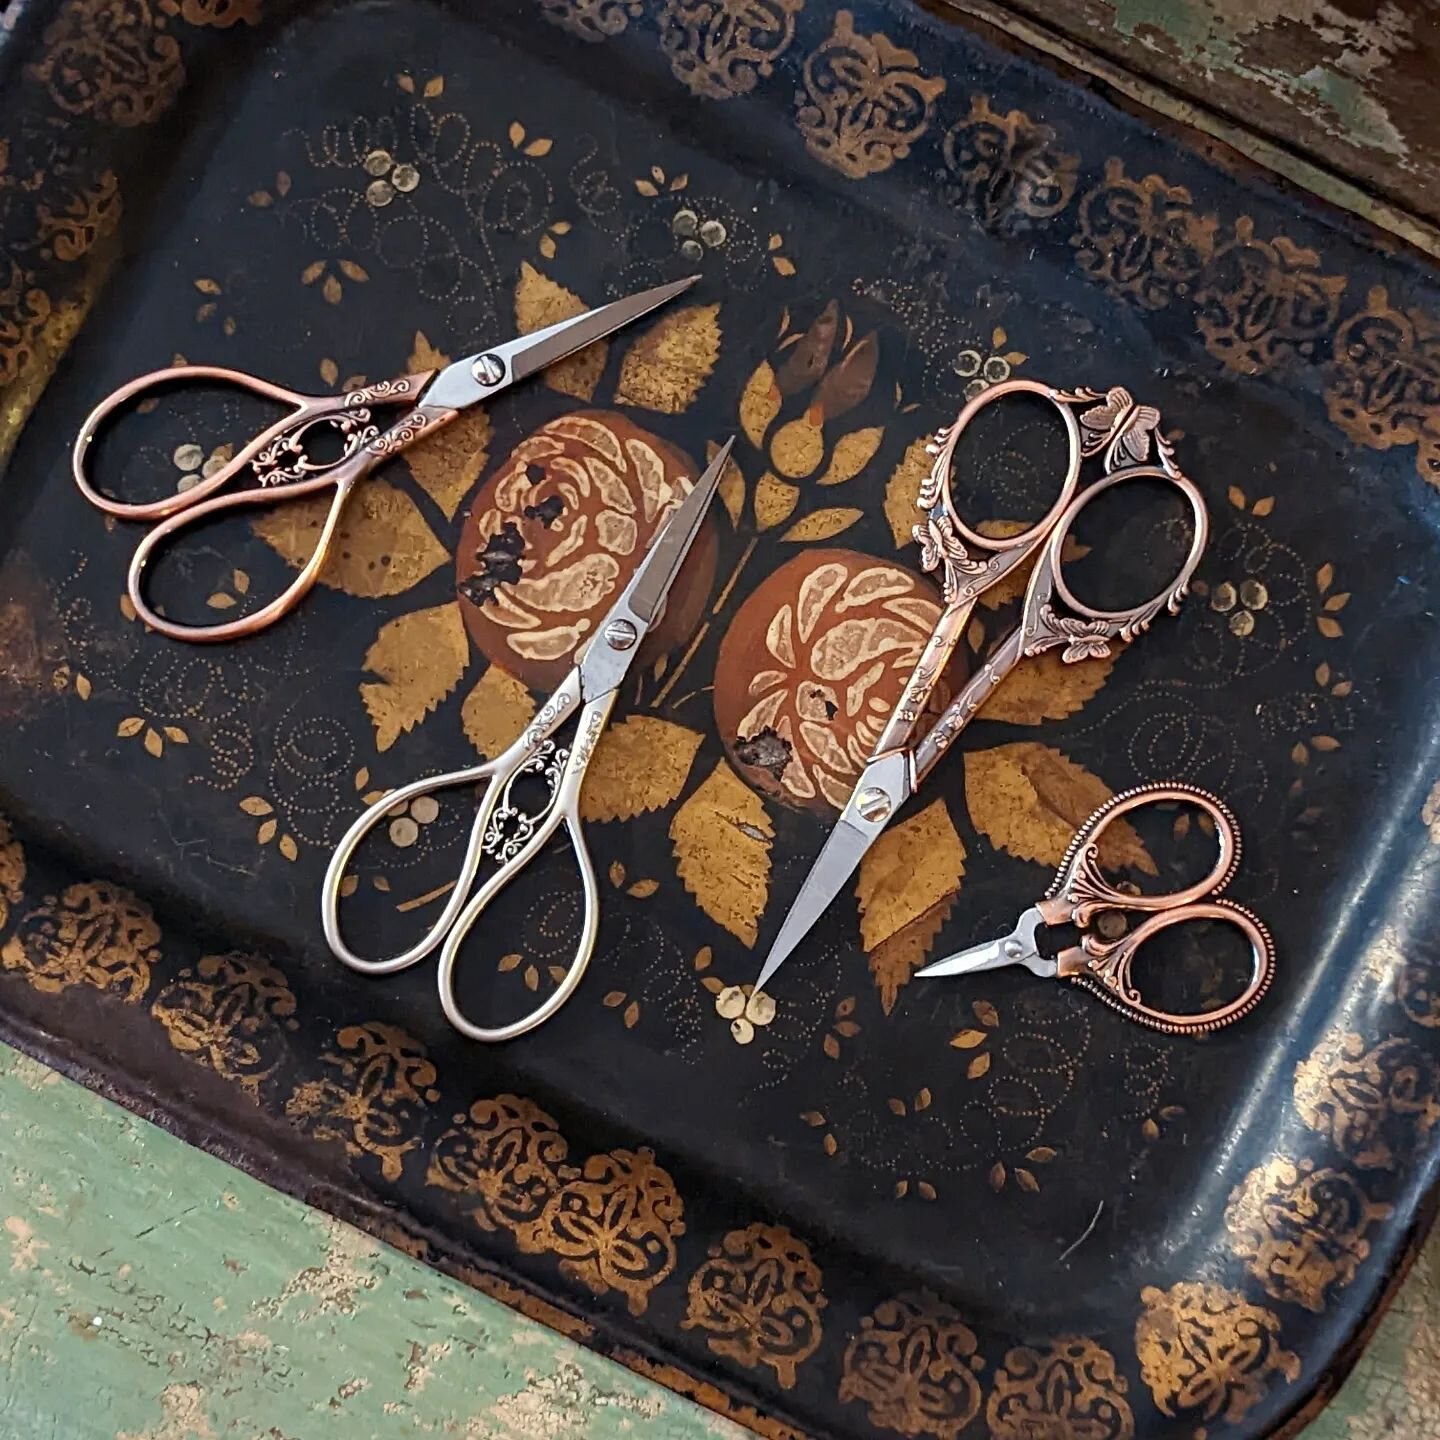 Our decorative scissors are a fan favorite. 🖤
.
.
.
#shopelswares #uniquegifts #littletreasures